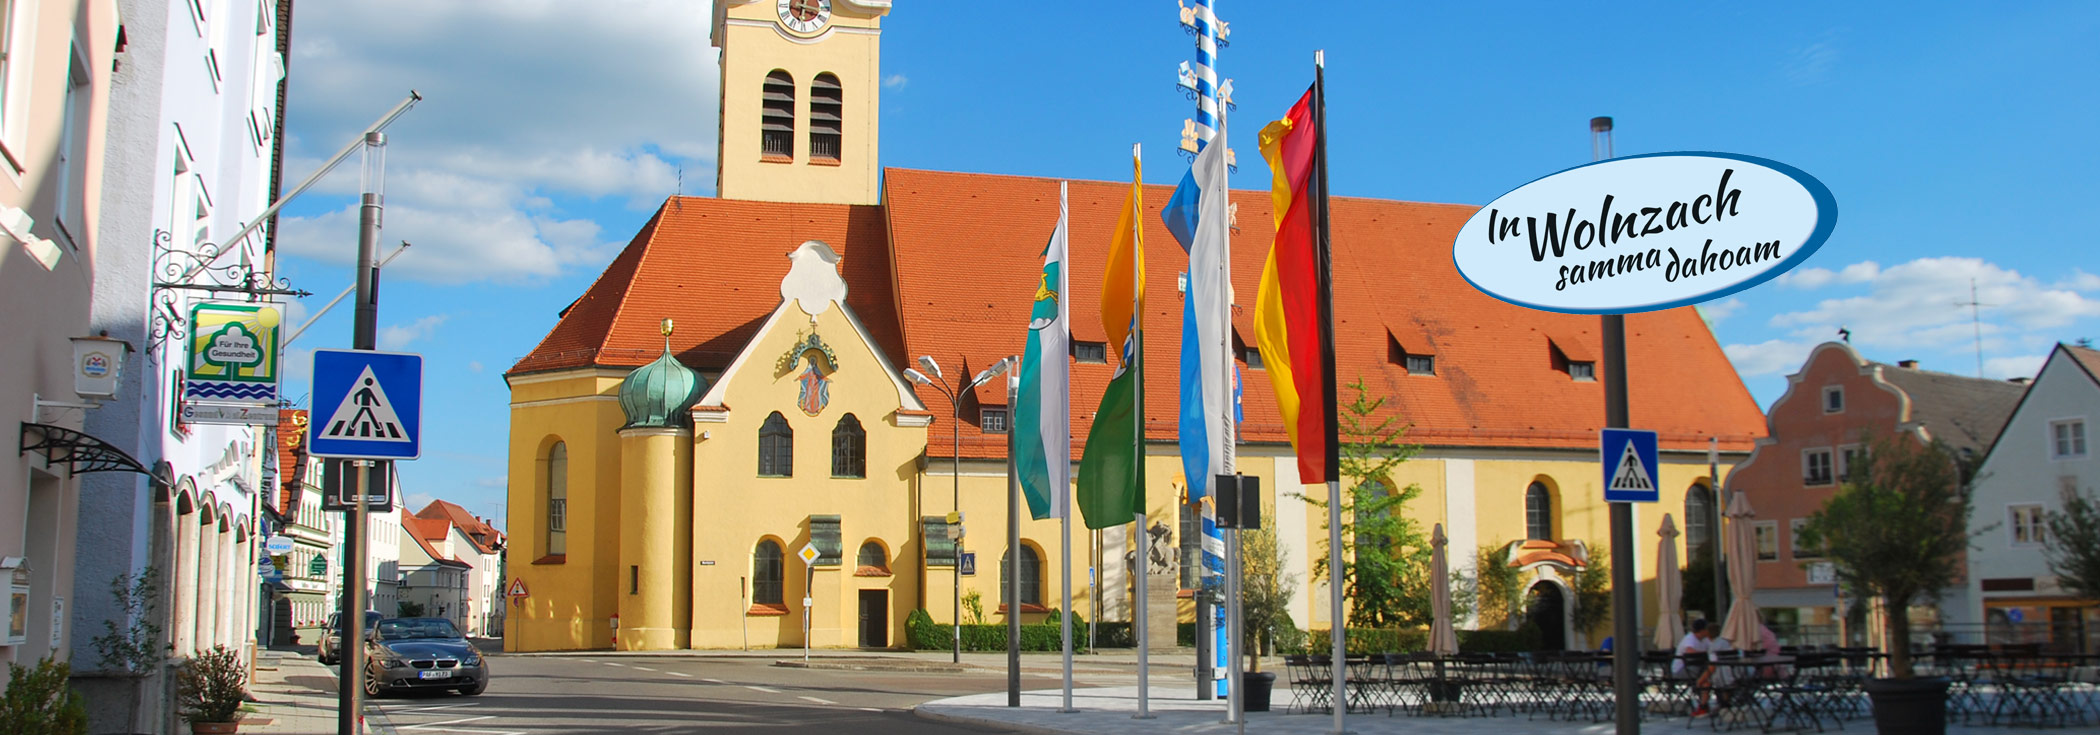 Kirche Wolnzach